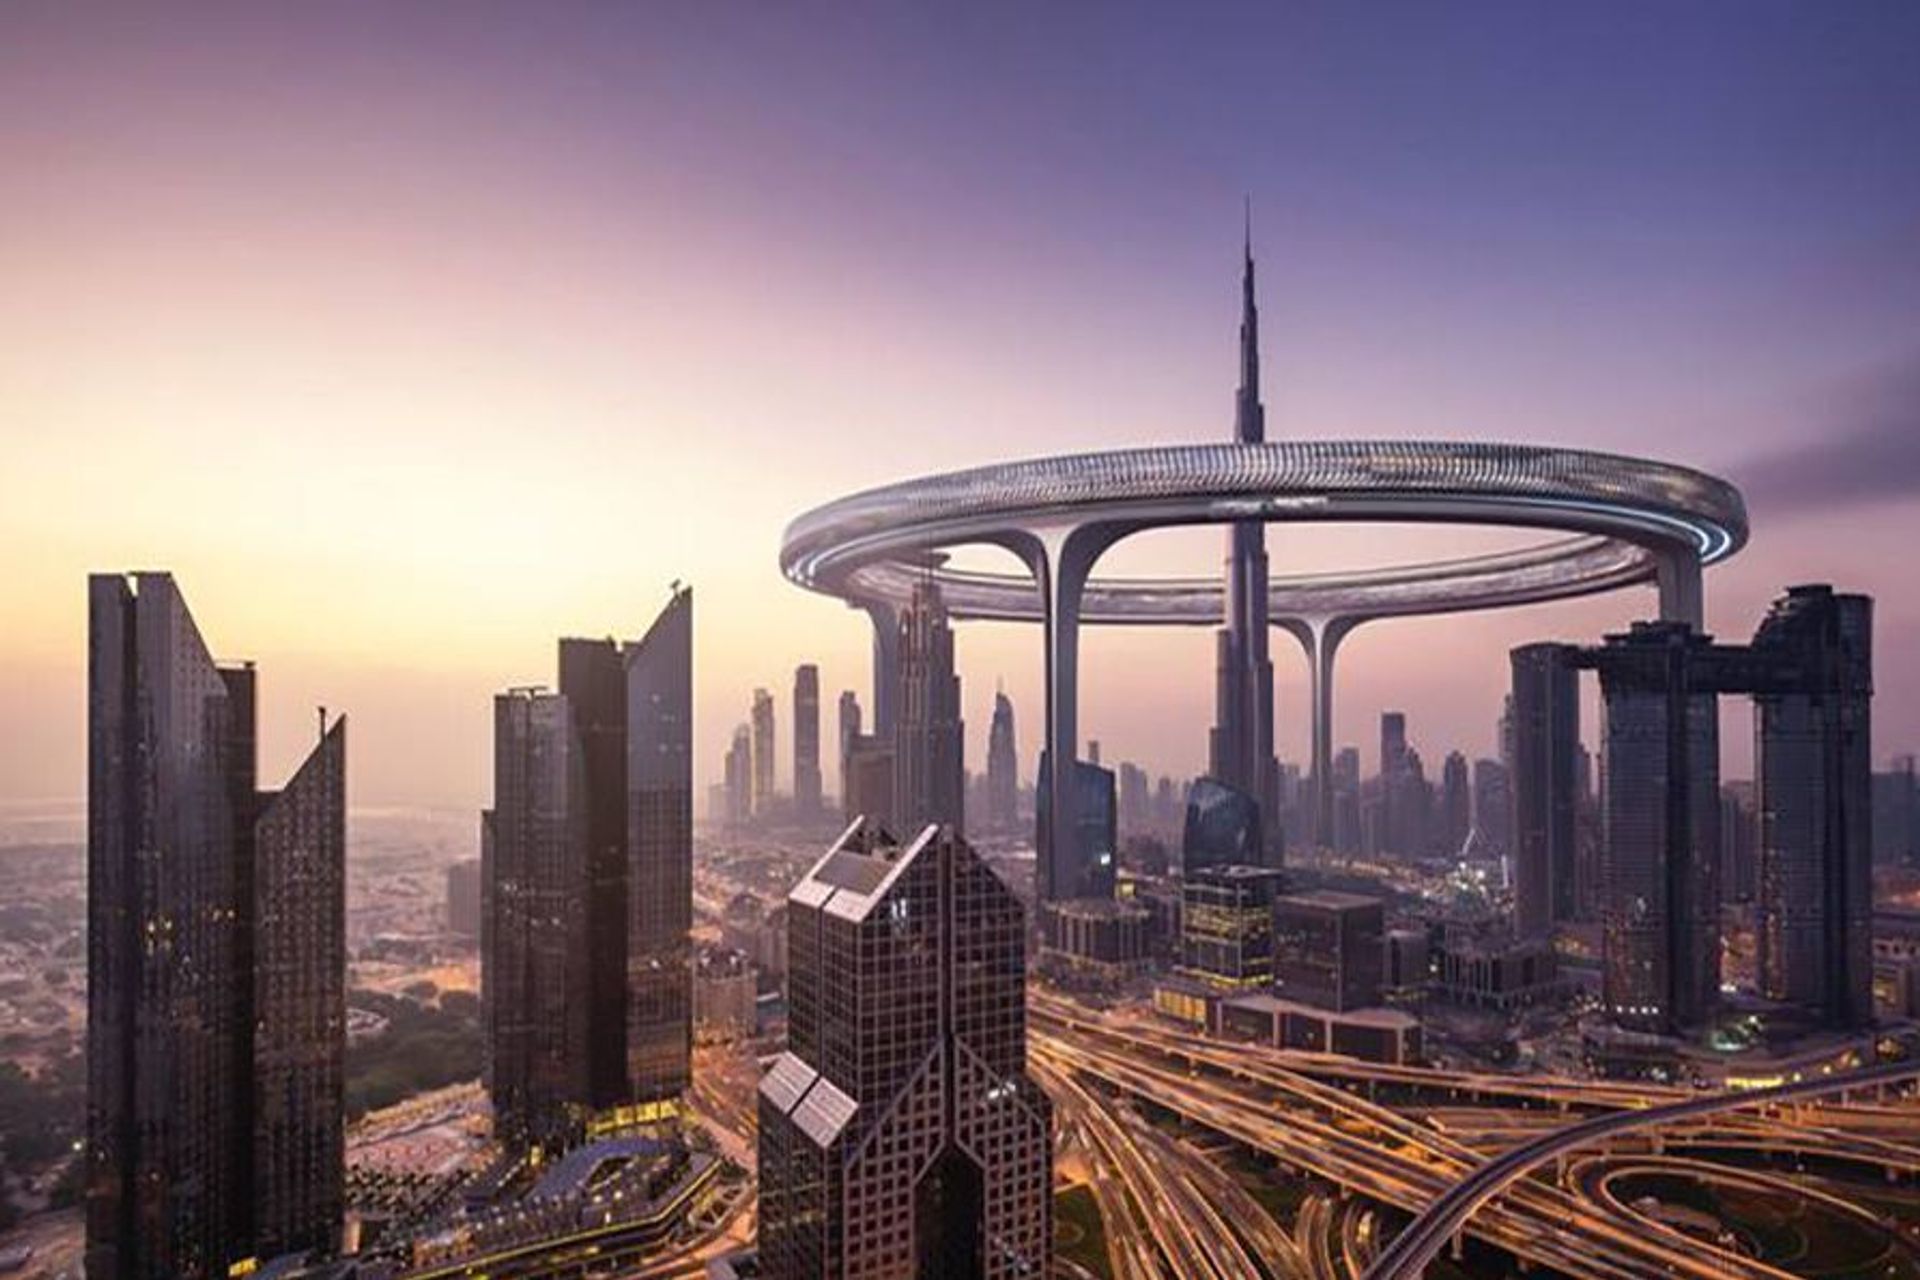 Downtown Circle Dubai нь 3 км урт цагираг хэлбэртэй барилга байх болно